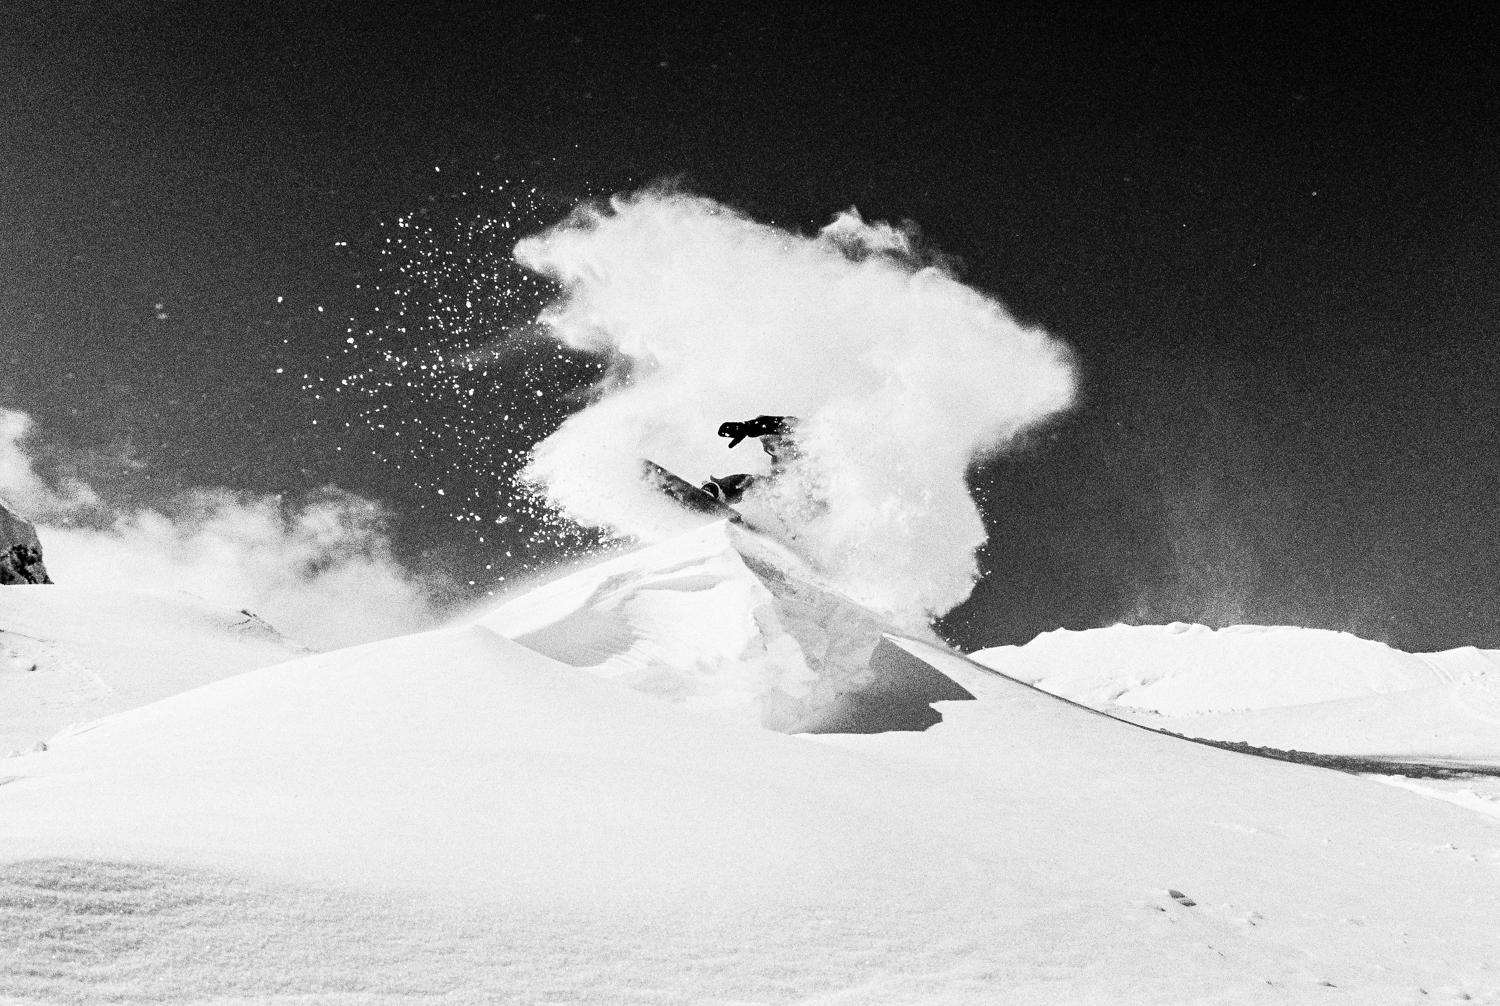 Snowdance - Mountain Snowboarding Photographie d'art en noir et blanc